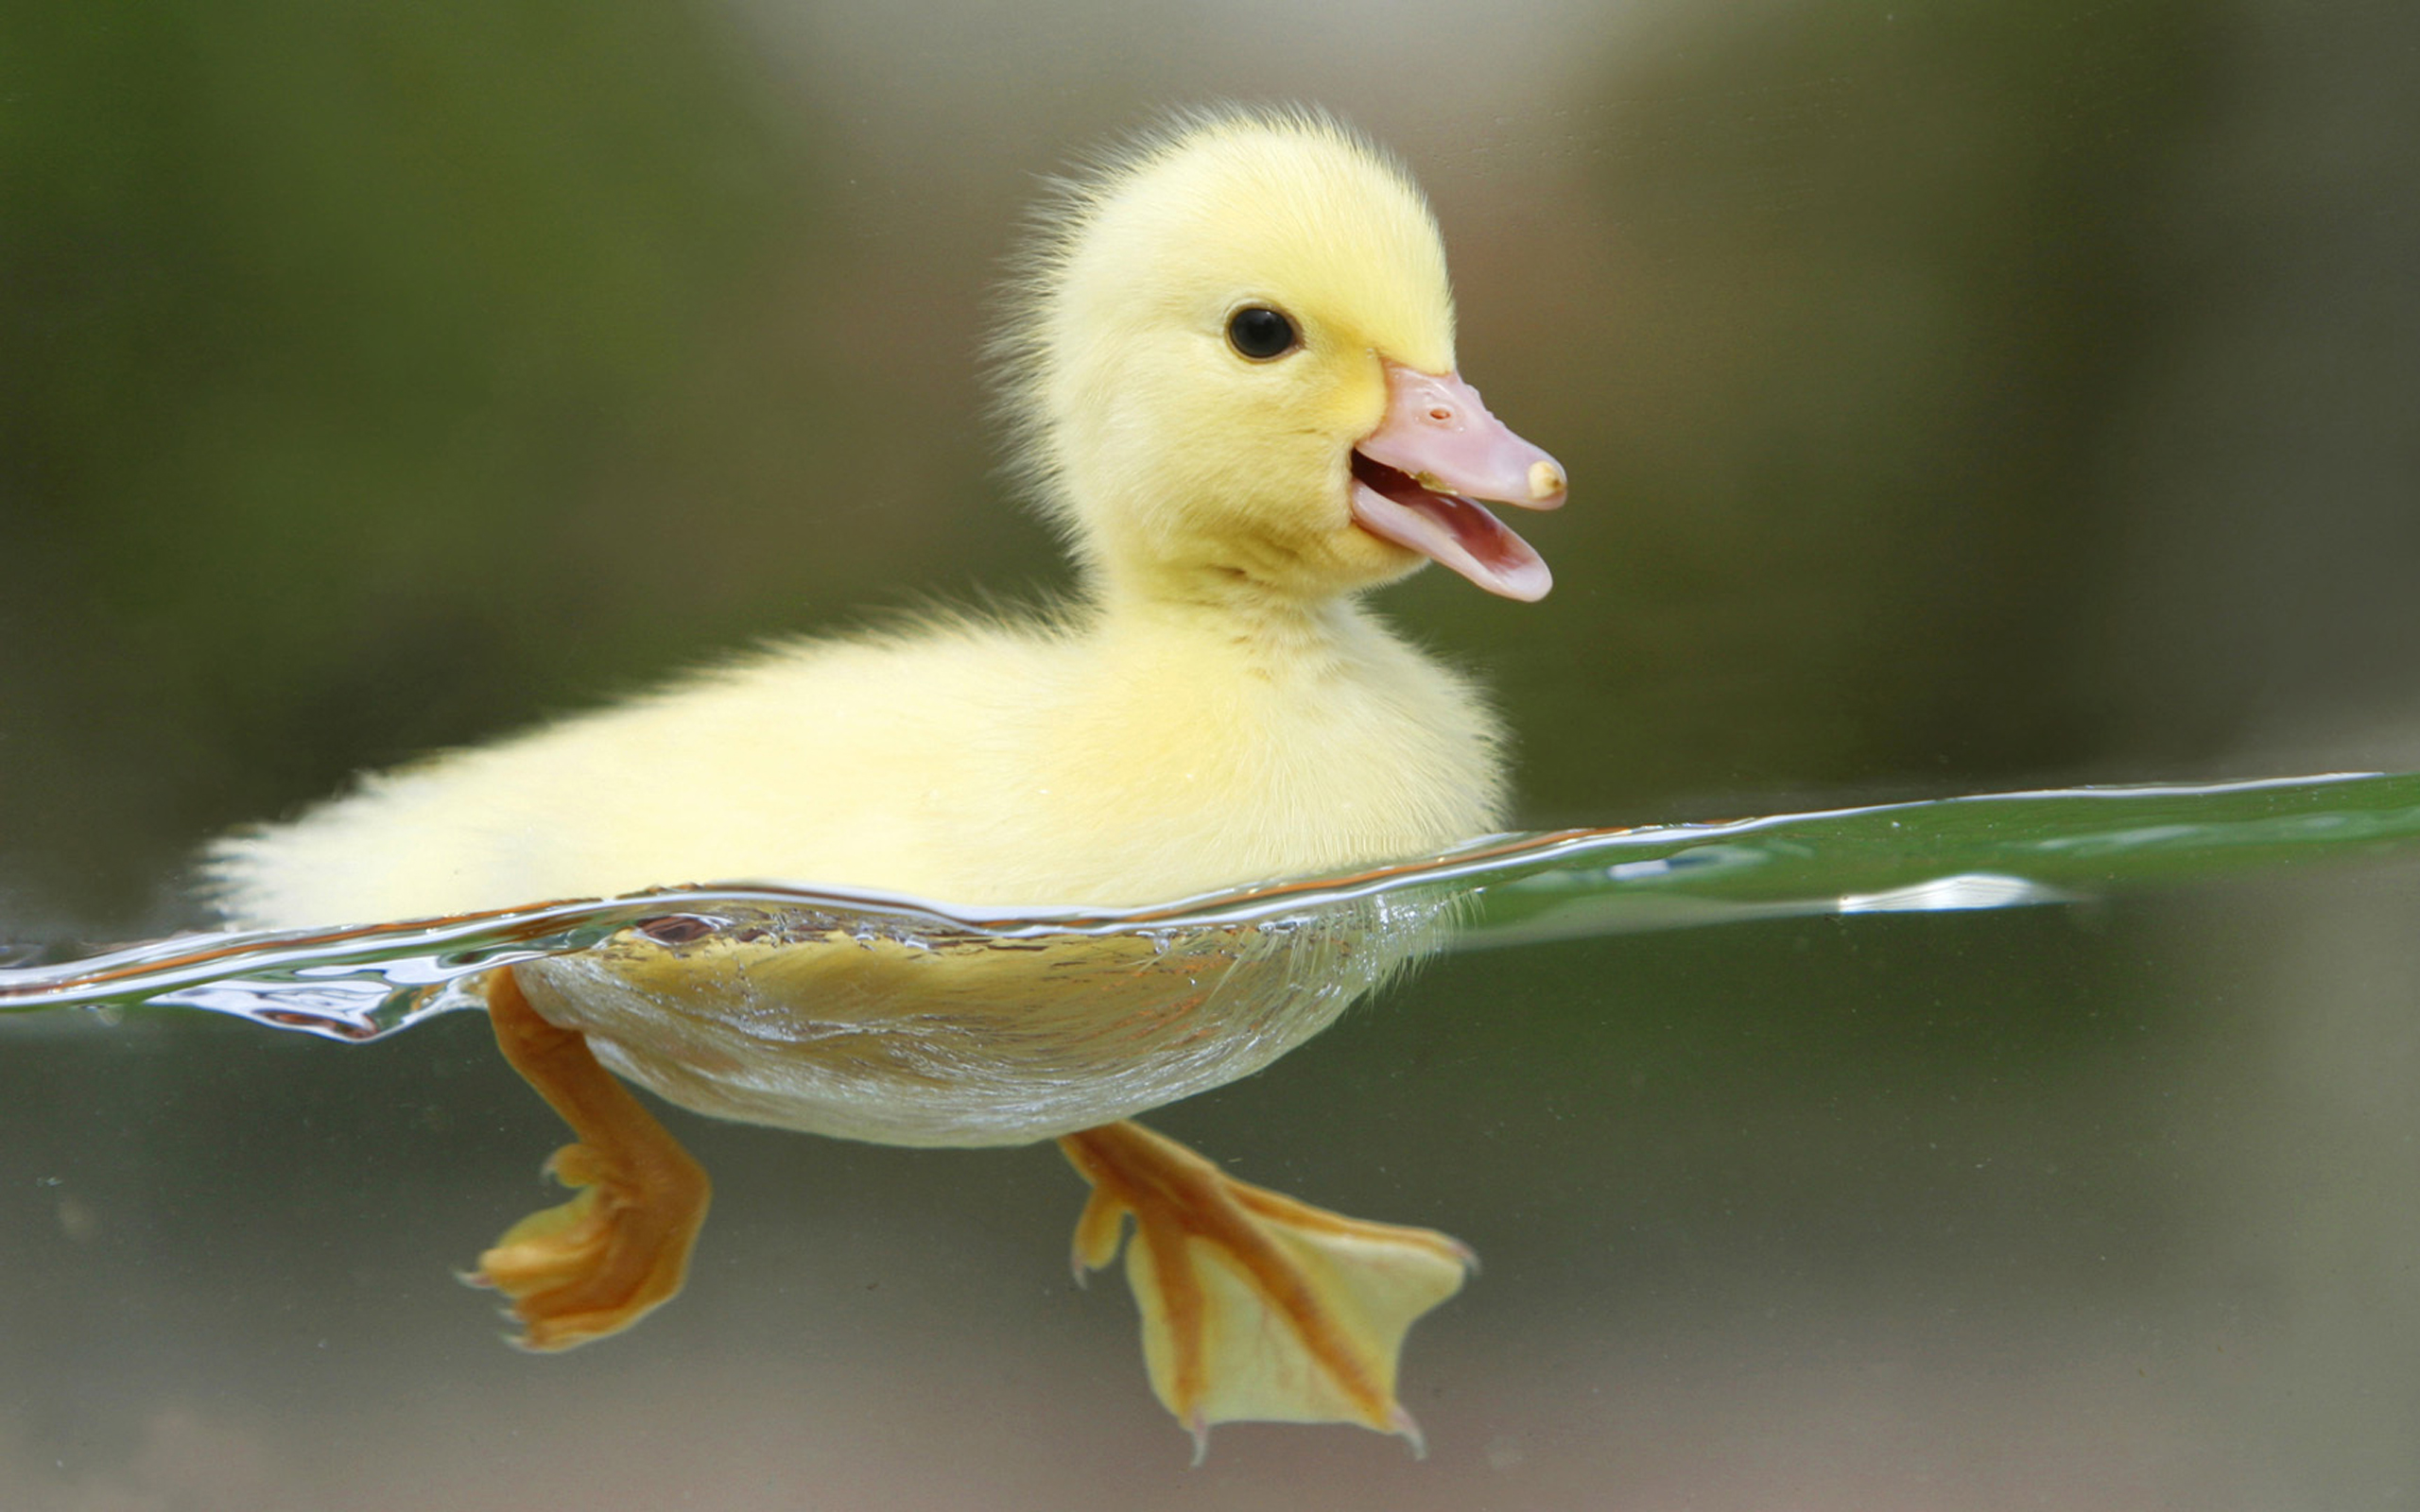 Duckycutie